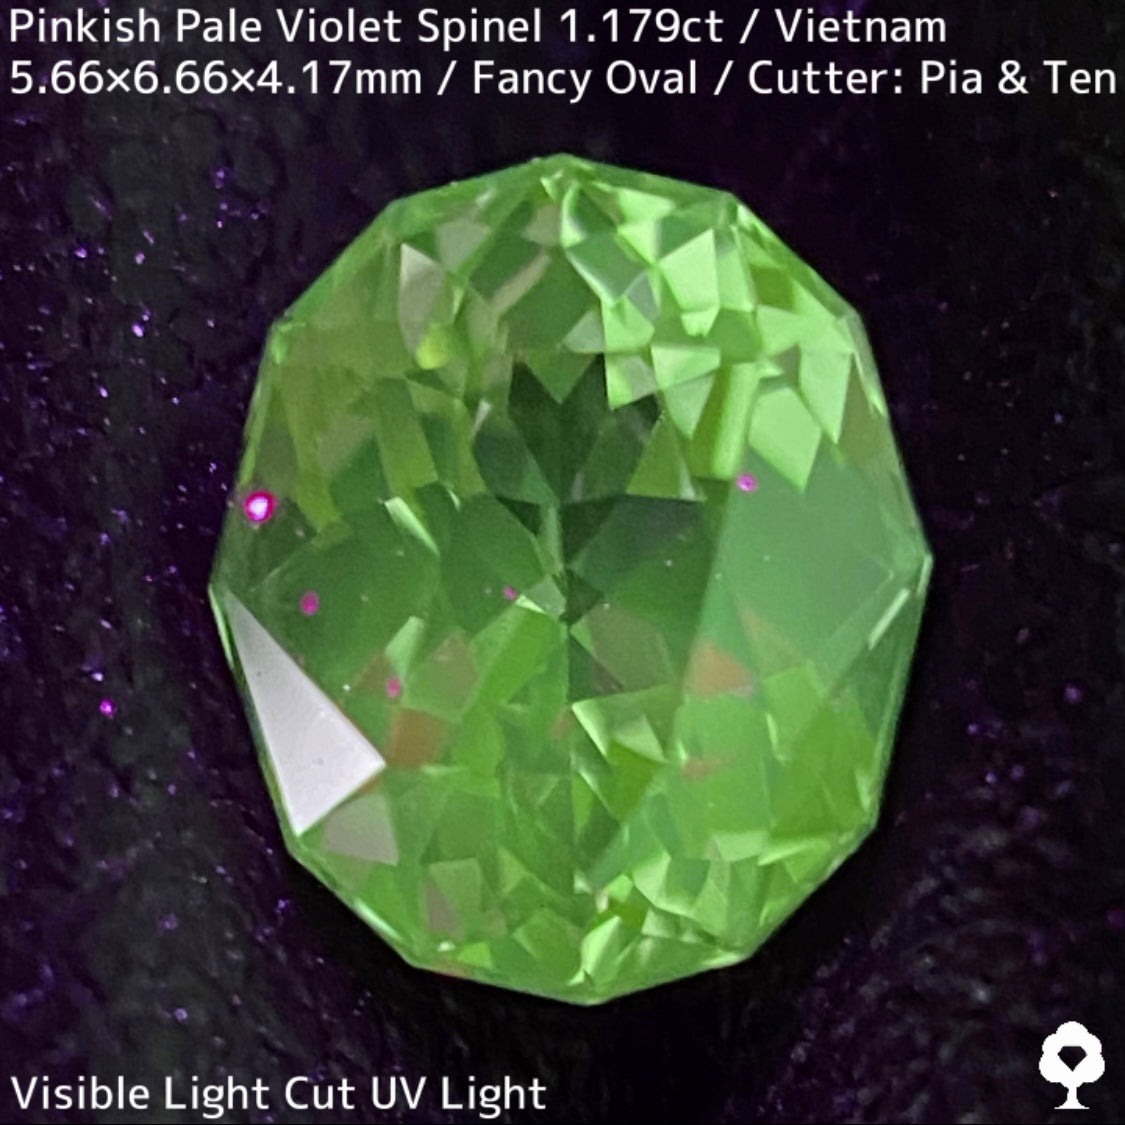 ベトナム産スピネル1.179ct★ほんのりヴァイオレットが可愛い煌めき・透明度抜群の1ctアップ美結晶